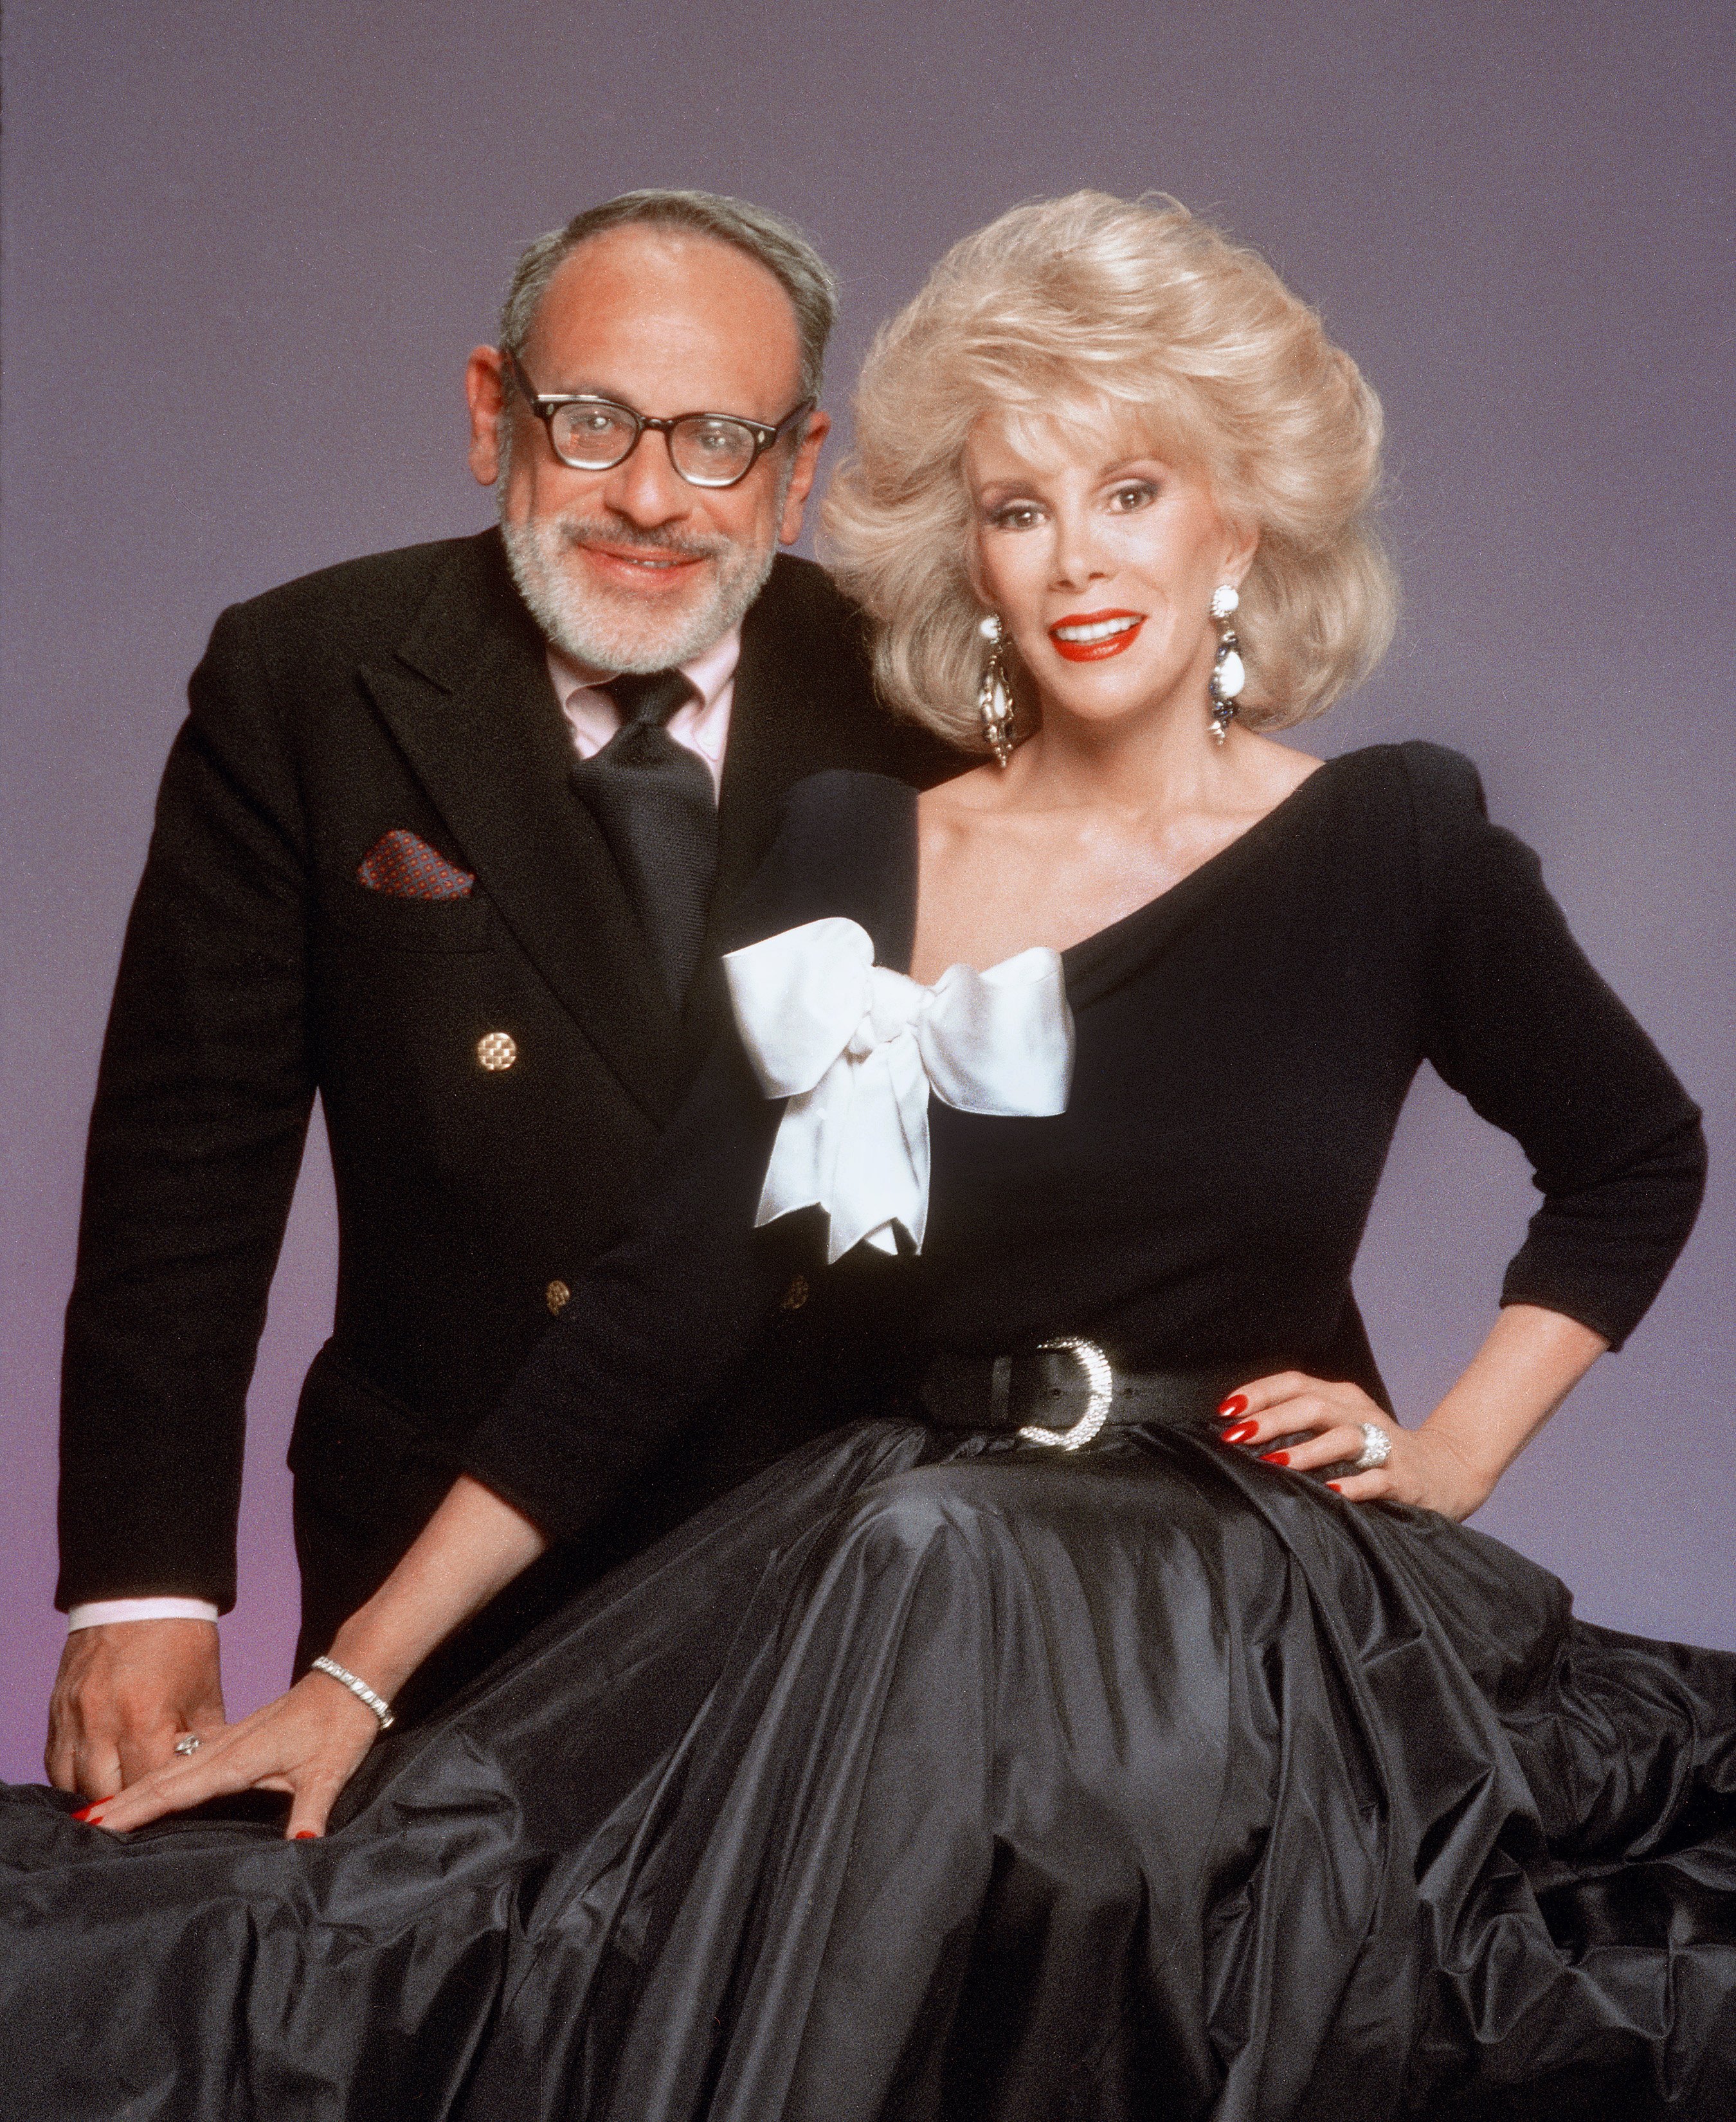 Edgar Rosenberg et Joan Rivers posent pour un portrait en 1987 à Los Angeles, Californie | Source : Getty Images